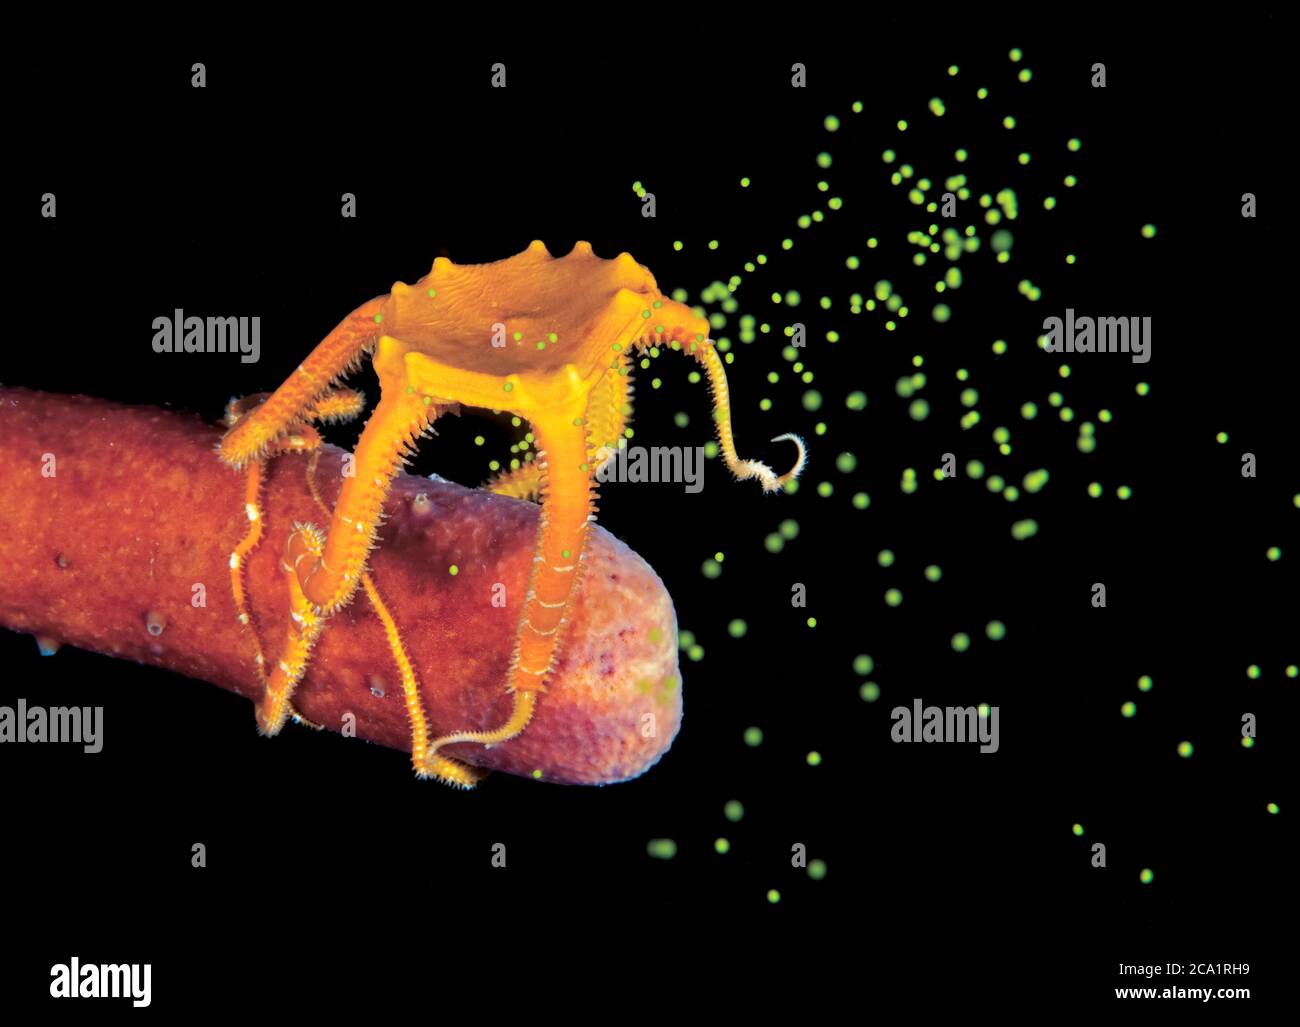 Knalliger brüchiger Stern, Ophioderma ensiferum, seine Eier beim Laichen in der Nacht, Bonaire, ABC-Inseln, Karibik Niederlande, Karibik Meer, ATL Stockfoto